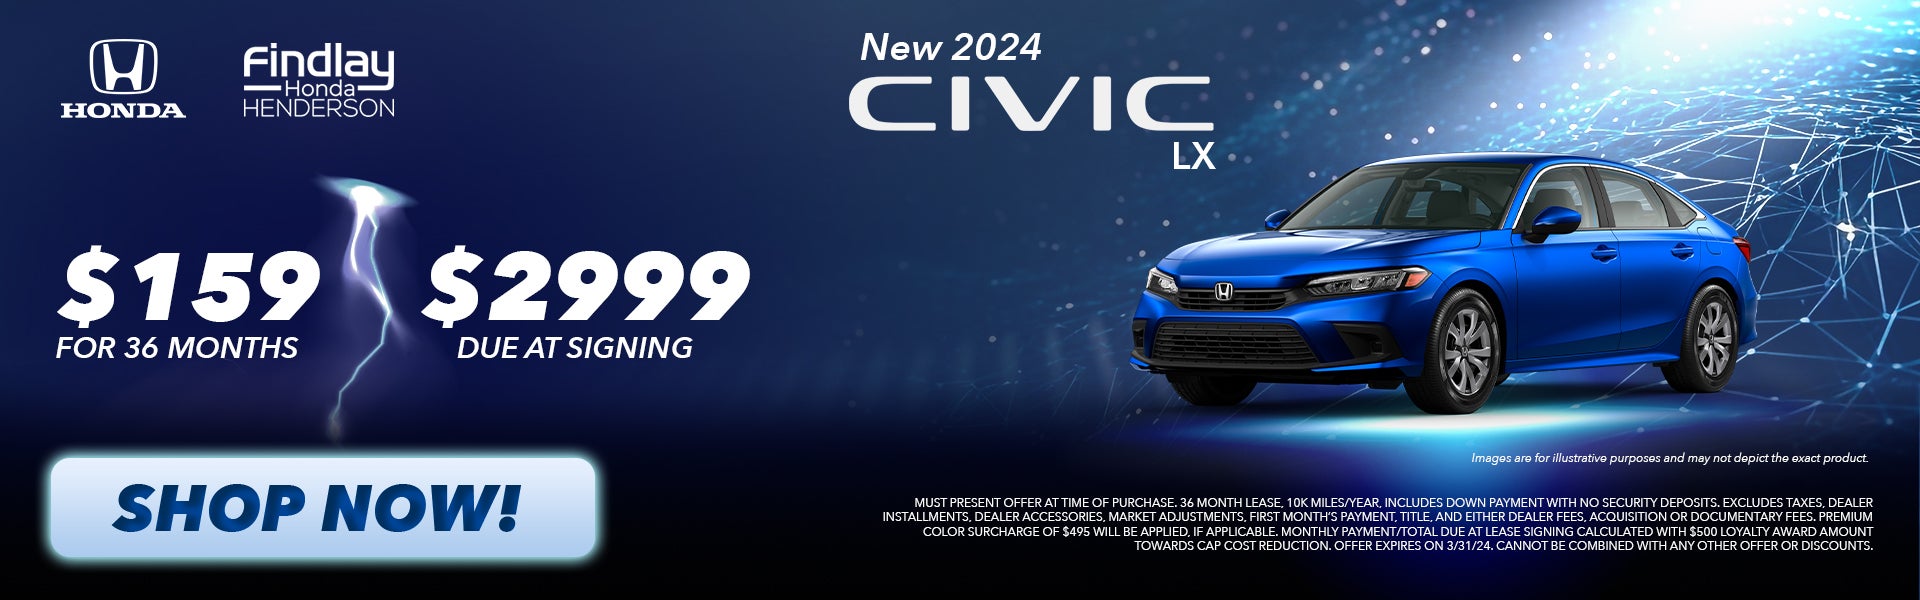 2024 Civic LX